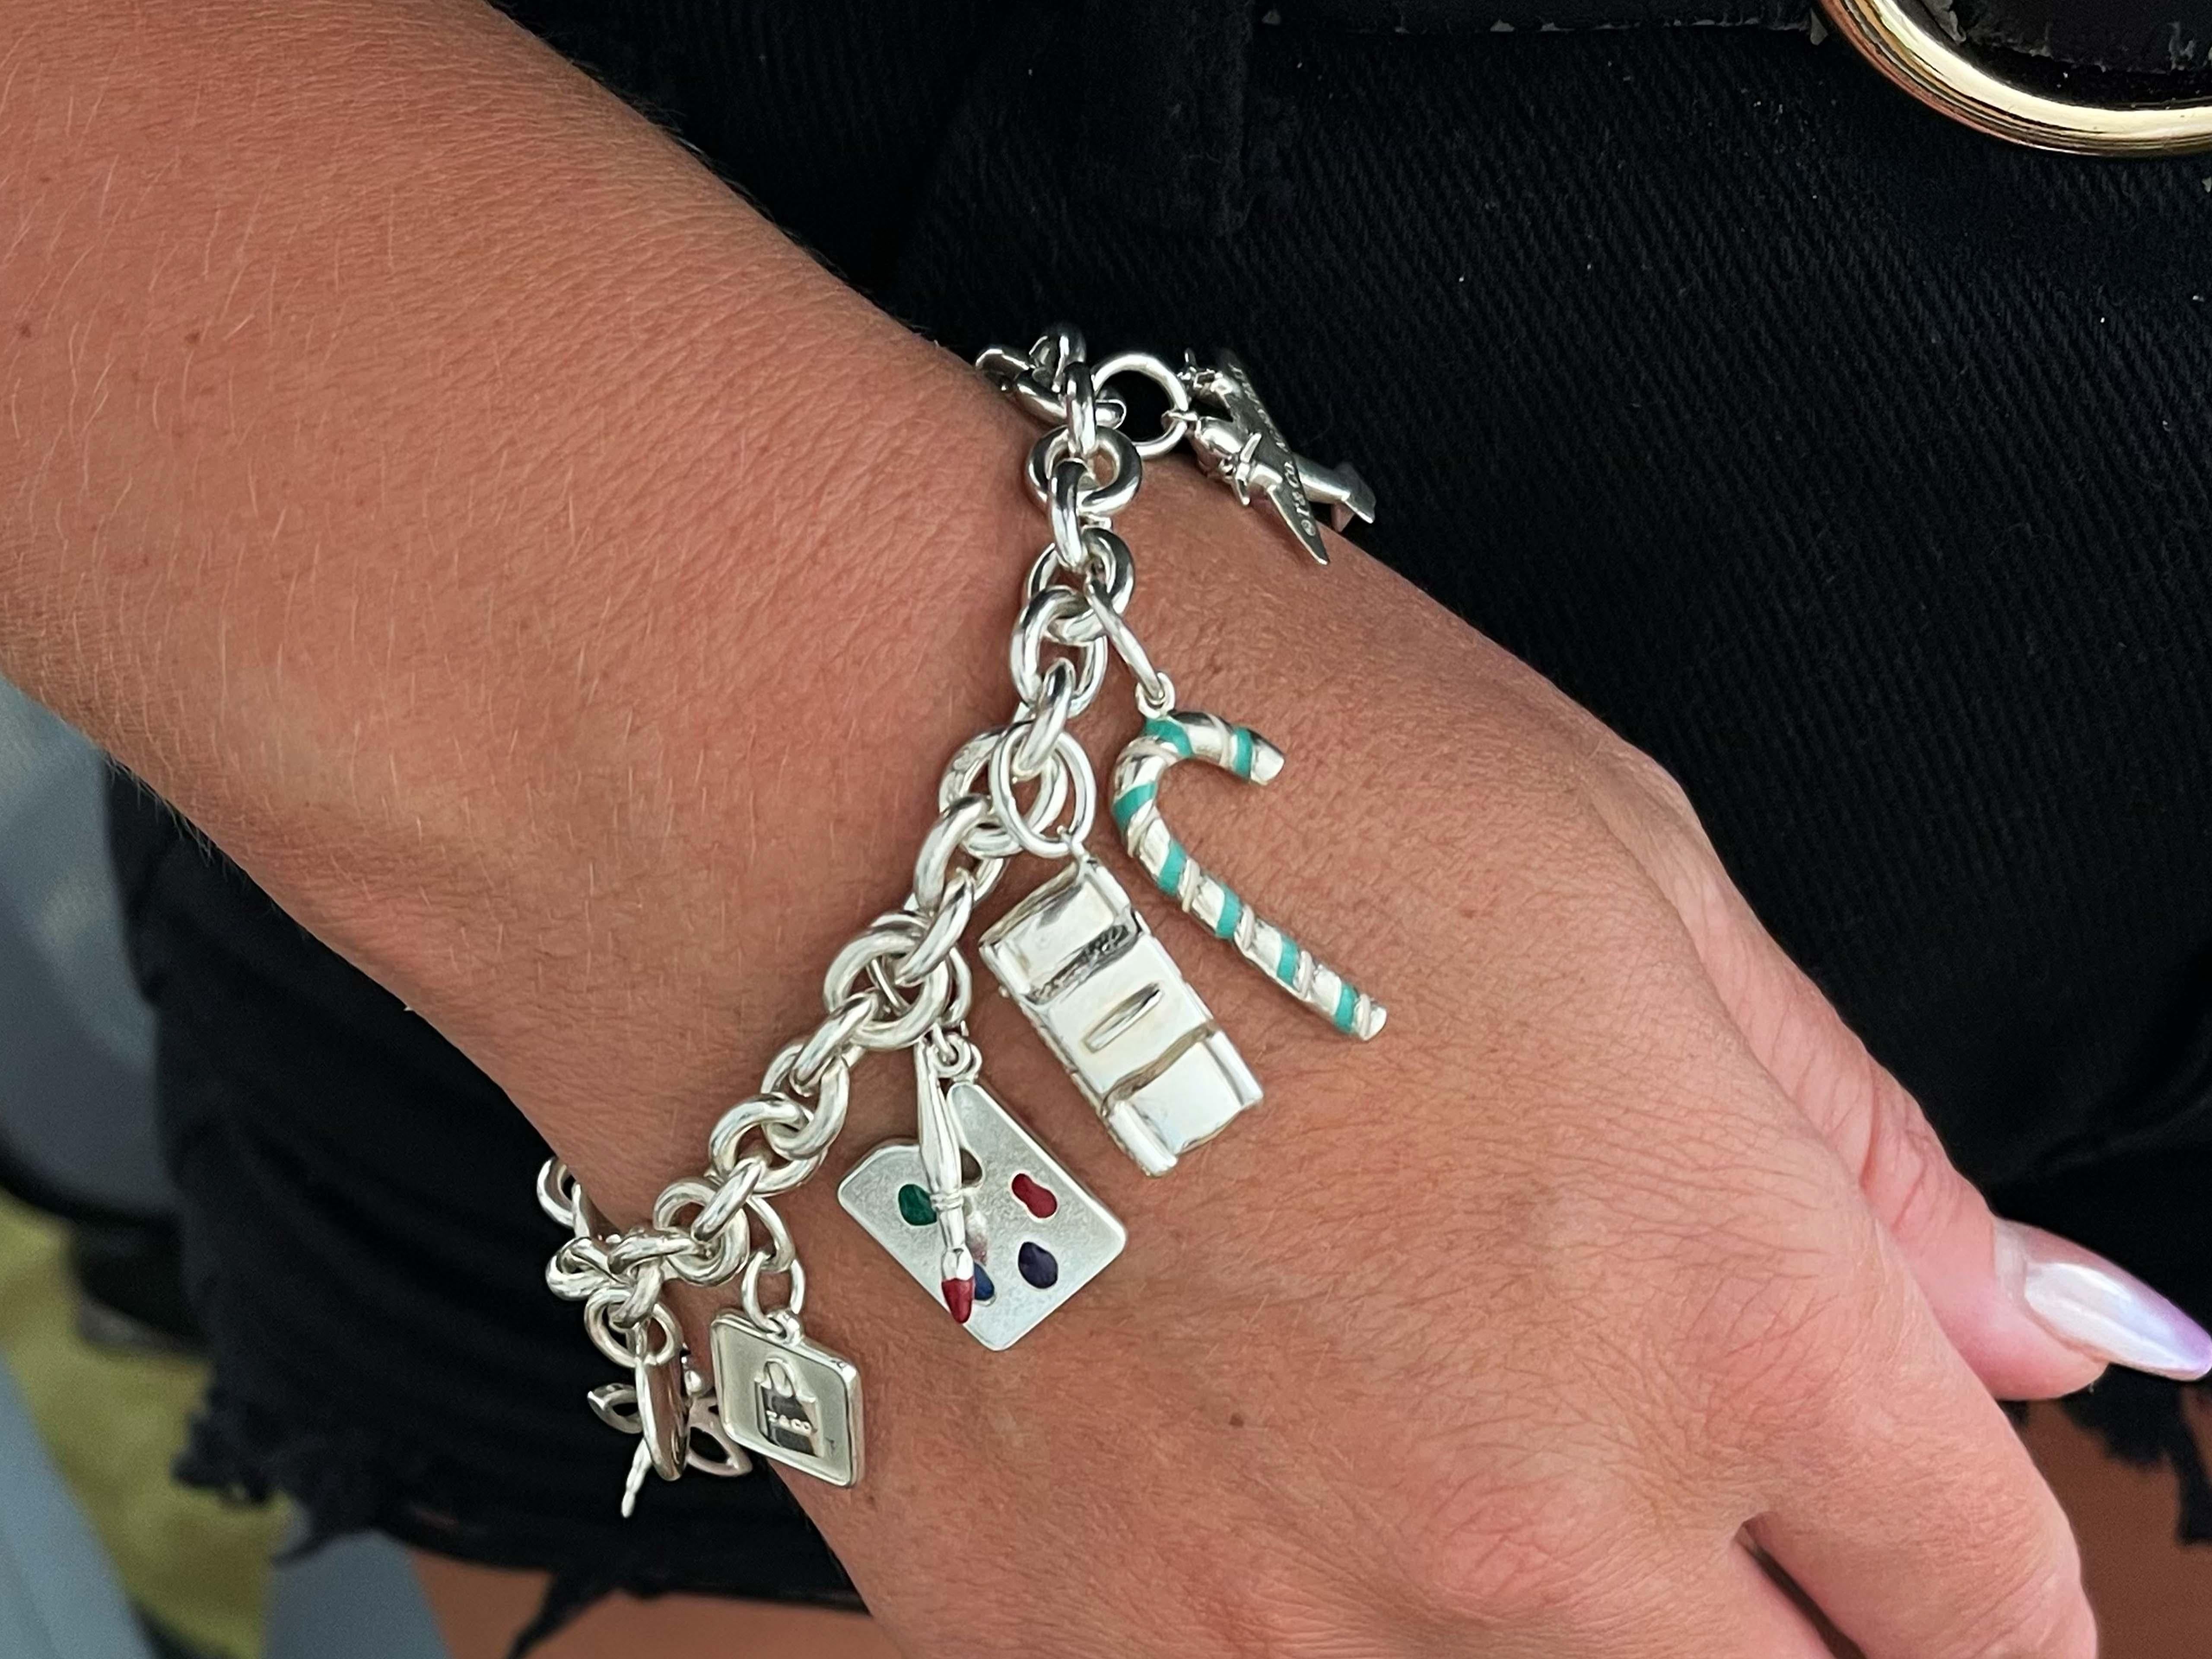 Ce bracelet Tiffany unique en son genre est extrêmement rare et présente des charmes rares dont certains ne sont pas disponibles sur le marché, notamment le charme de la palette d'art.

Spécifications de l'article :

Marque : Tiffany & Co.

Métal :